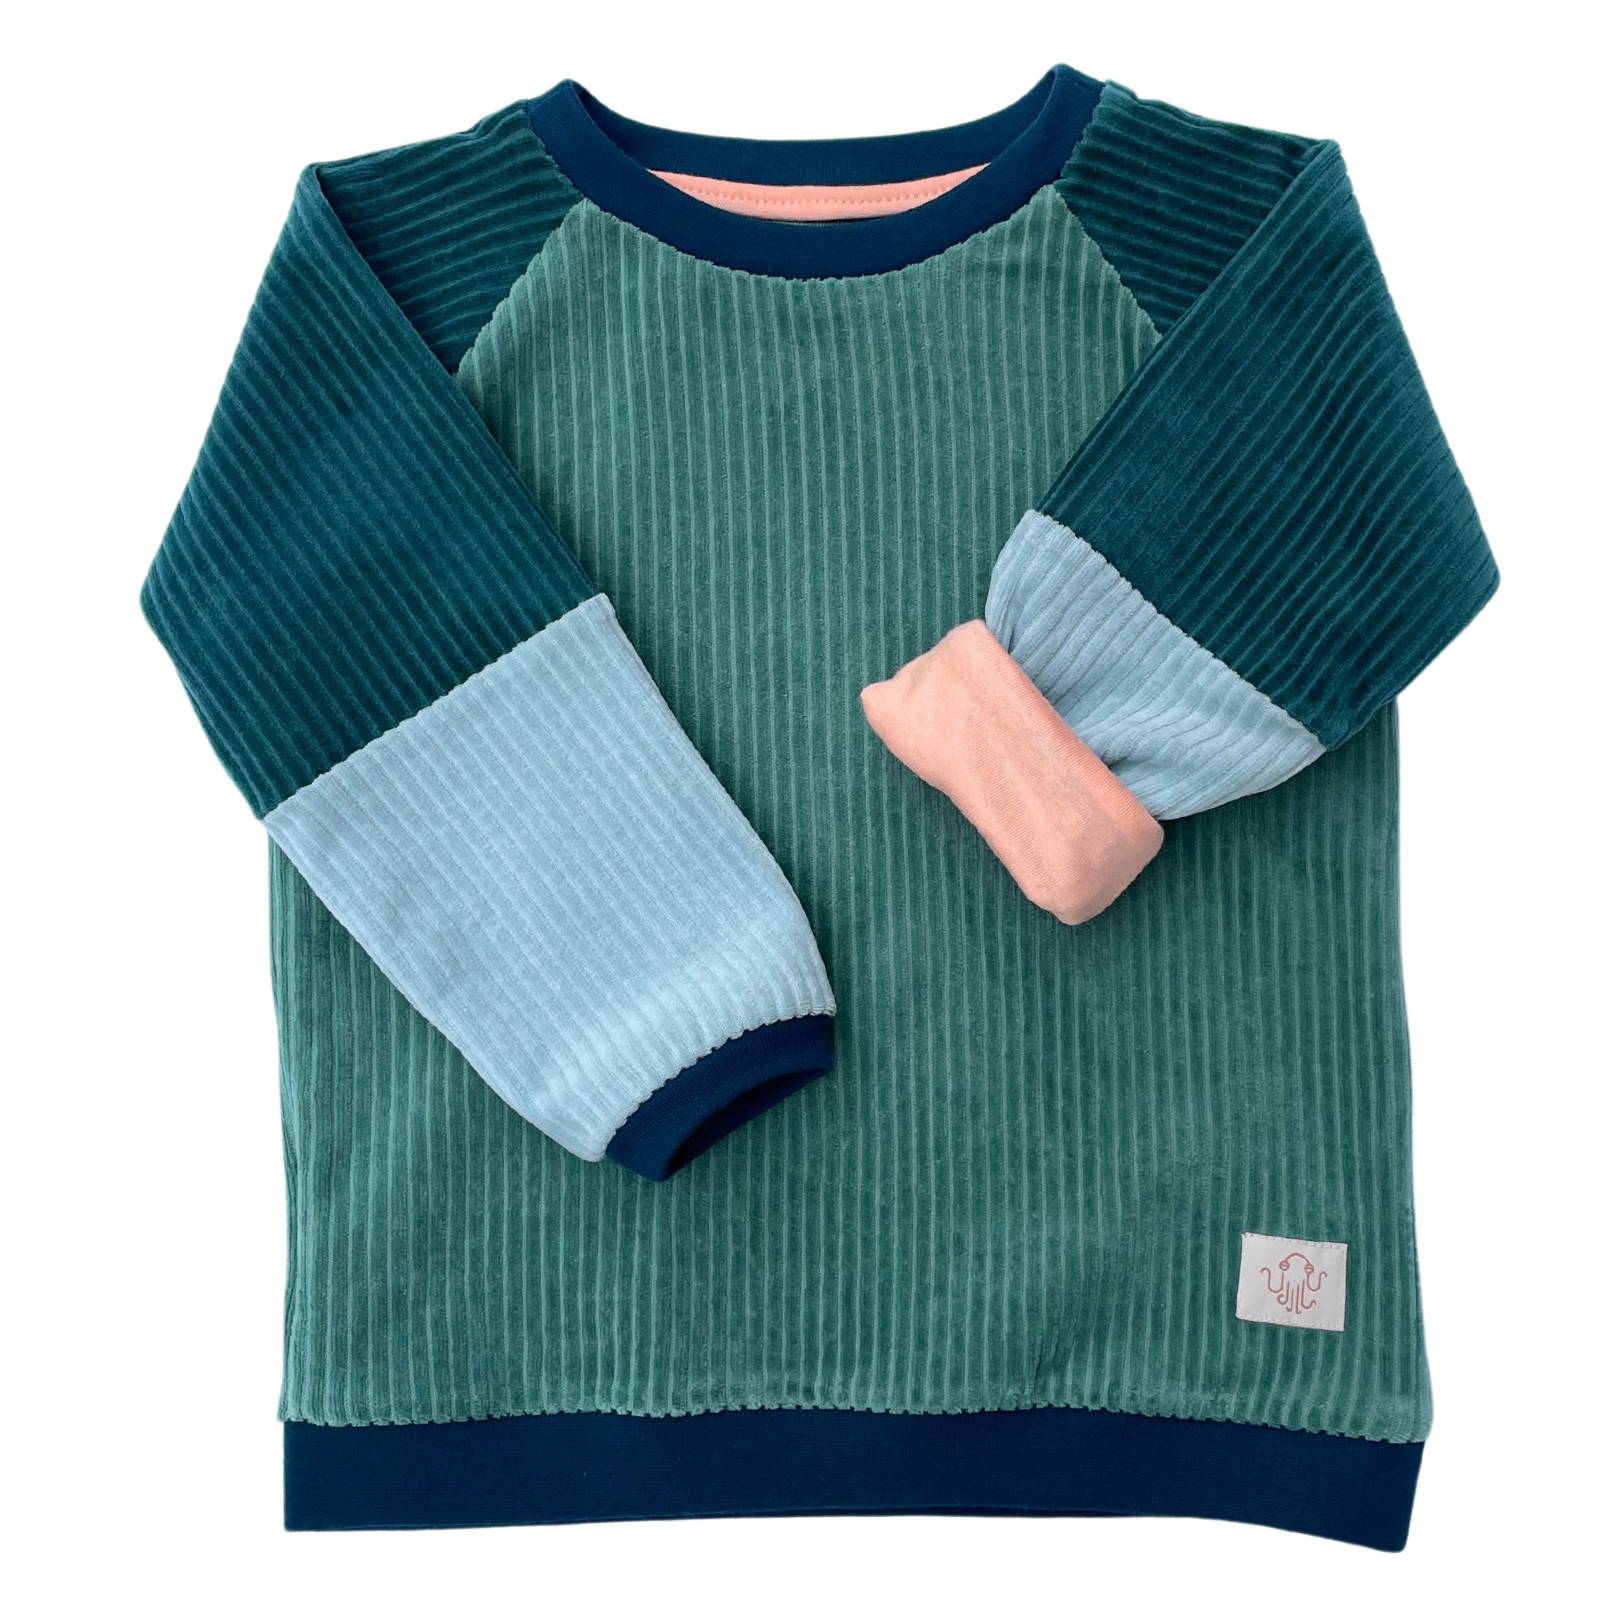 Fairer Alltagsbegleiter für Kinder aus Bio-Baumwolle in verschiedenen Blautönen von der Marke Oktopulli